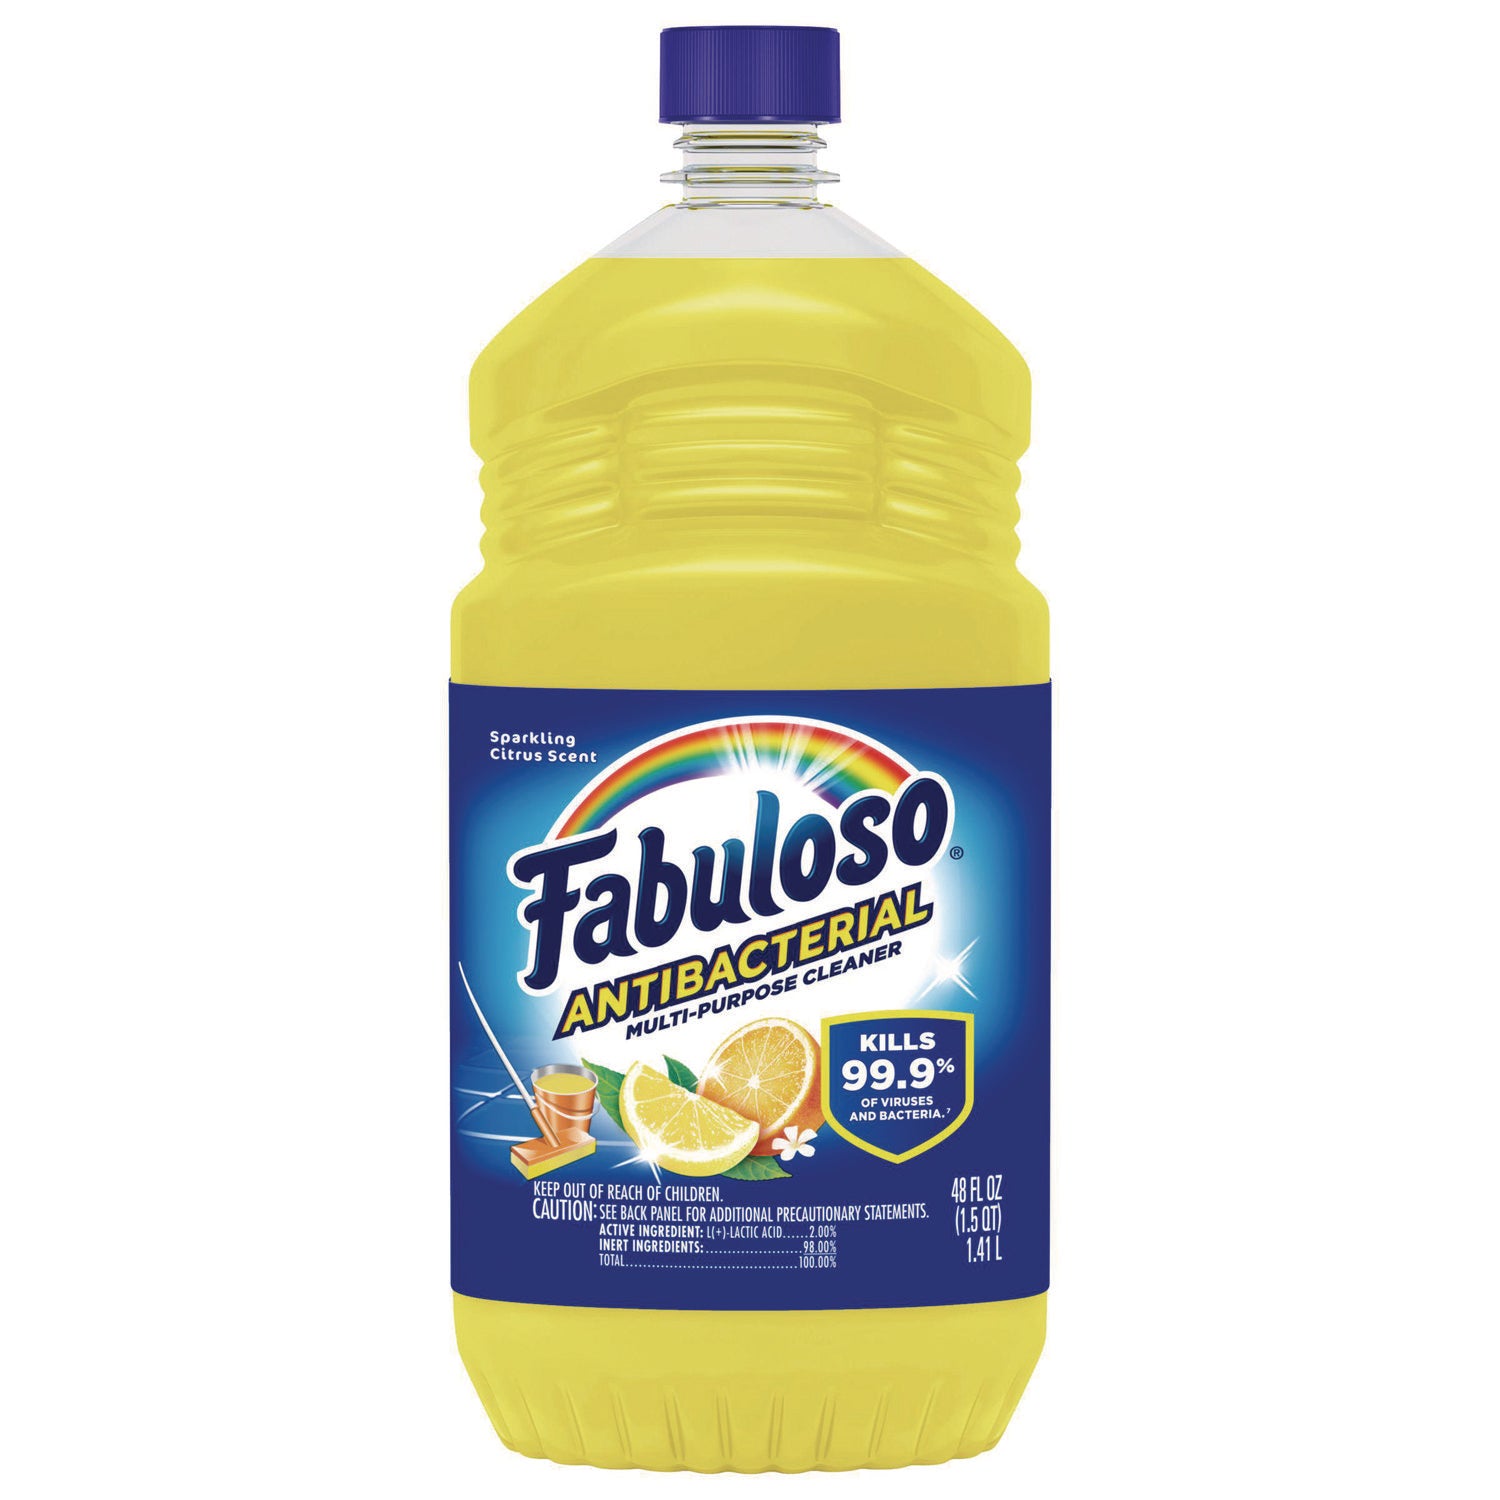 Antibacterial Multi-Purpose Cleaner, Sparkling Citrus Scent, 48 oz Bottle, 6/Carton - 2